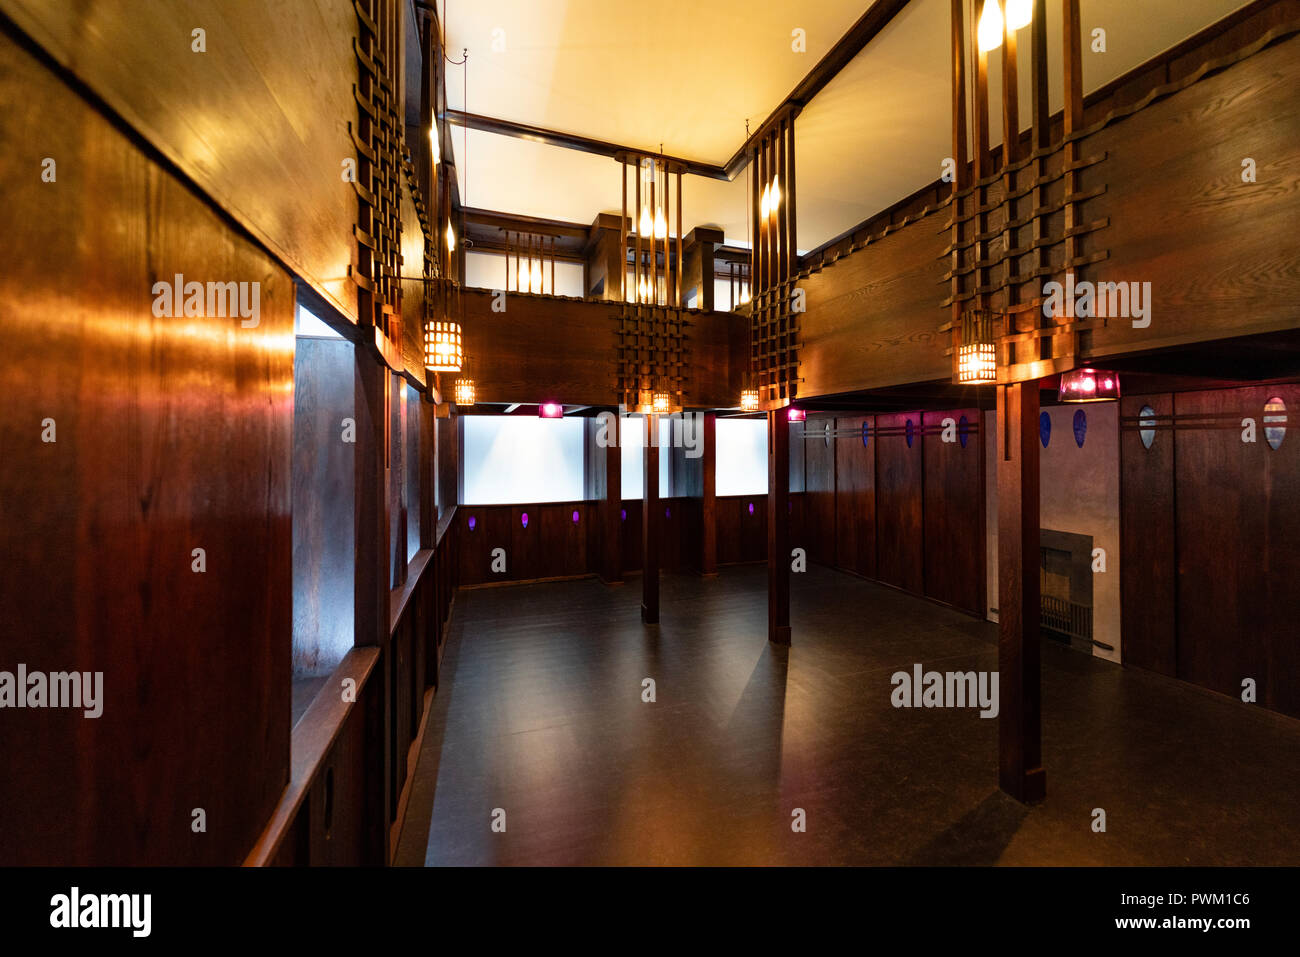 Innenraum der Oak Room von Charles Rennie Mackintosh am neuen V&A Museum in Dundee, Schottland, Großbritannien. Stockfoto